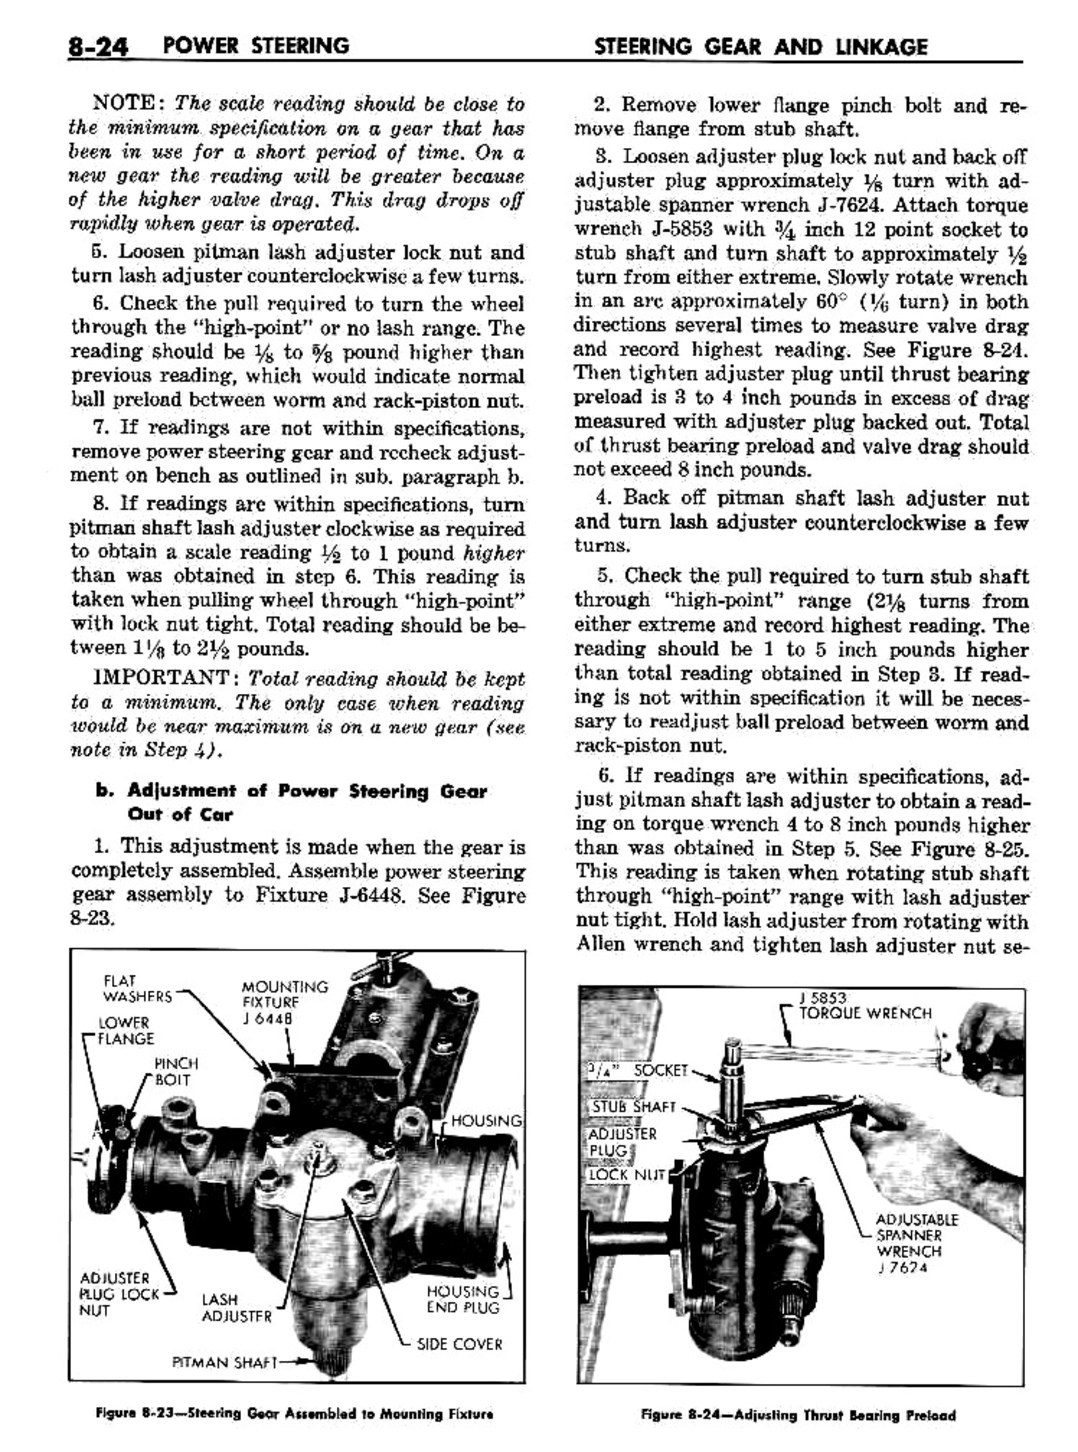 n_09 1960 Buick Shop Manual - Steering-024-024.jpg